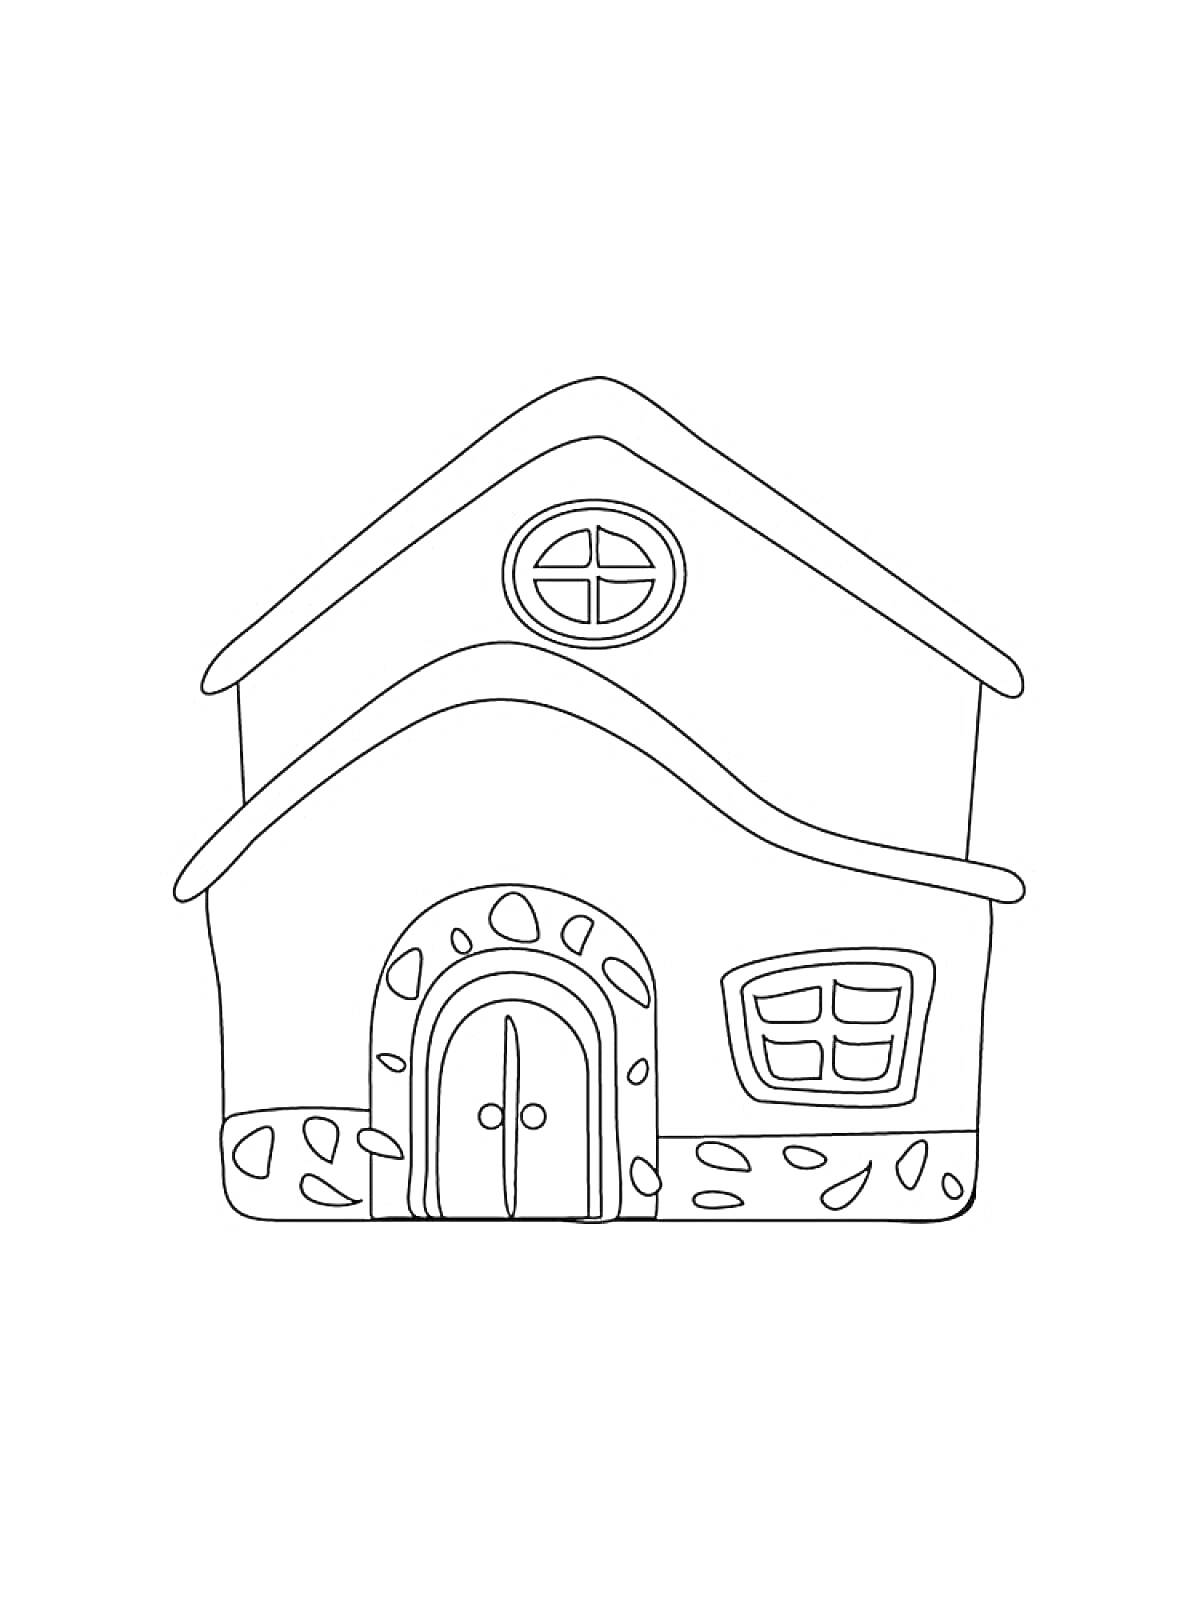 Дом с круглым окном наверху, дверью и квадратным окном внизу, с рисунком камней на фасаде